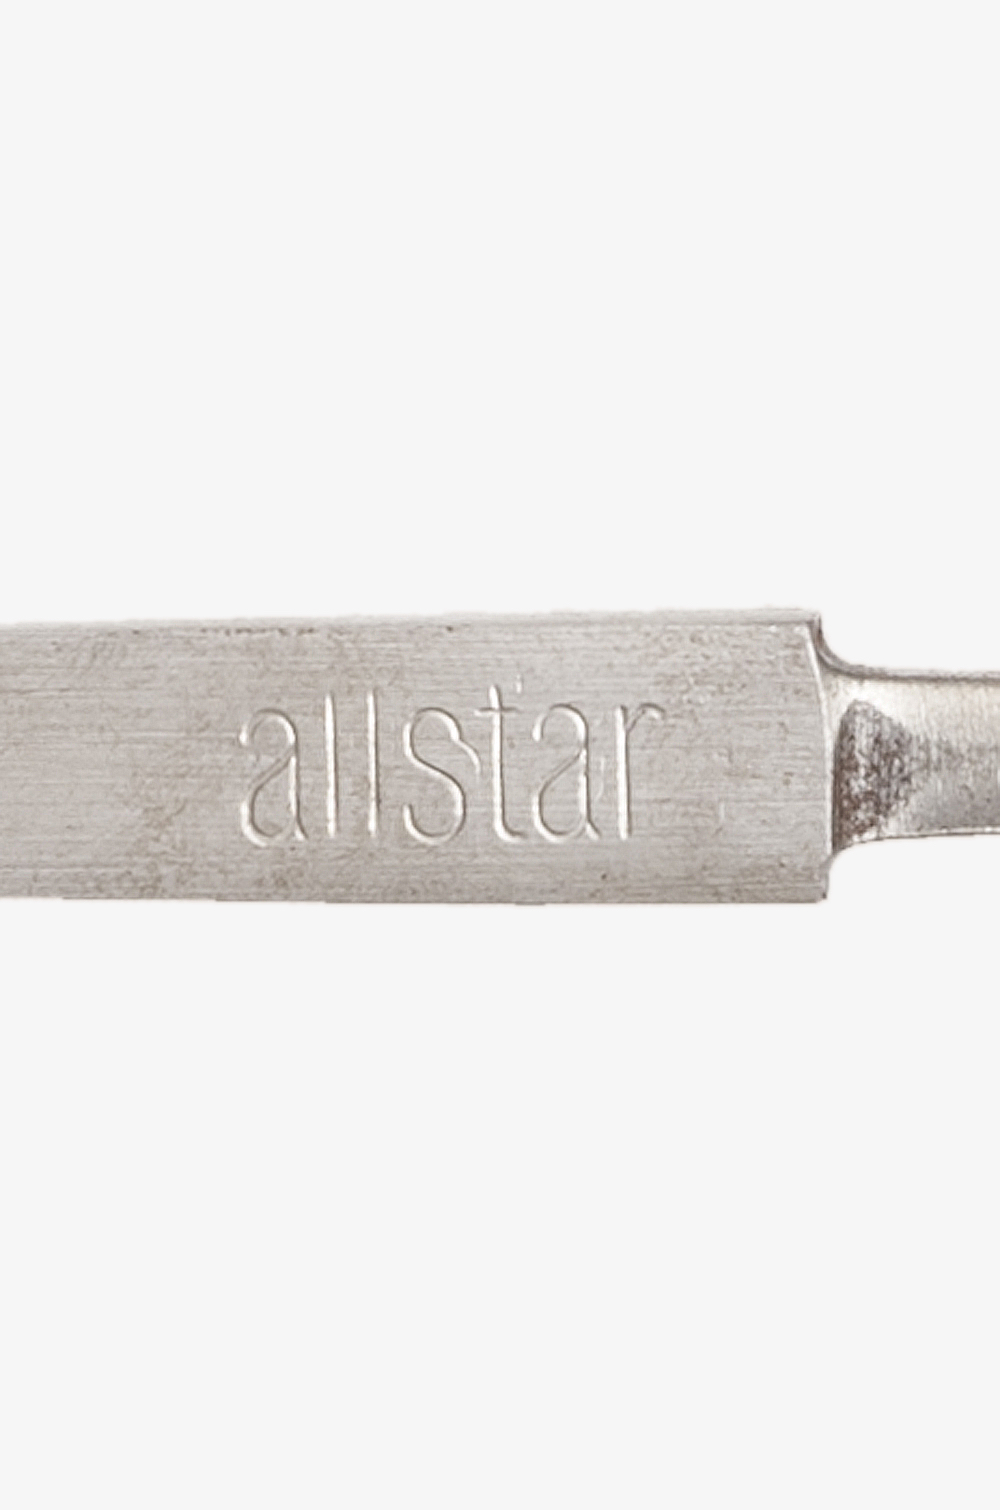 allstar Ecostar mini Foil Blade bare